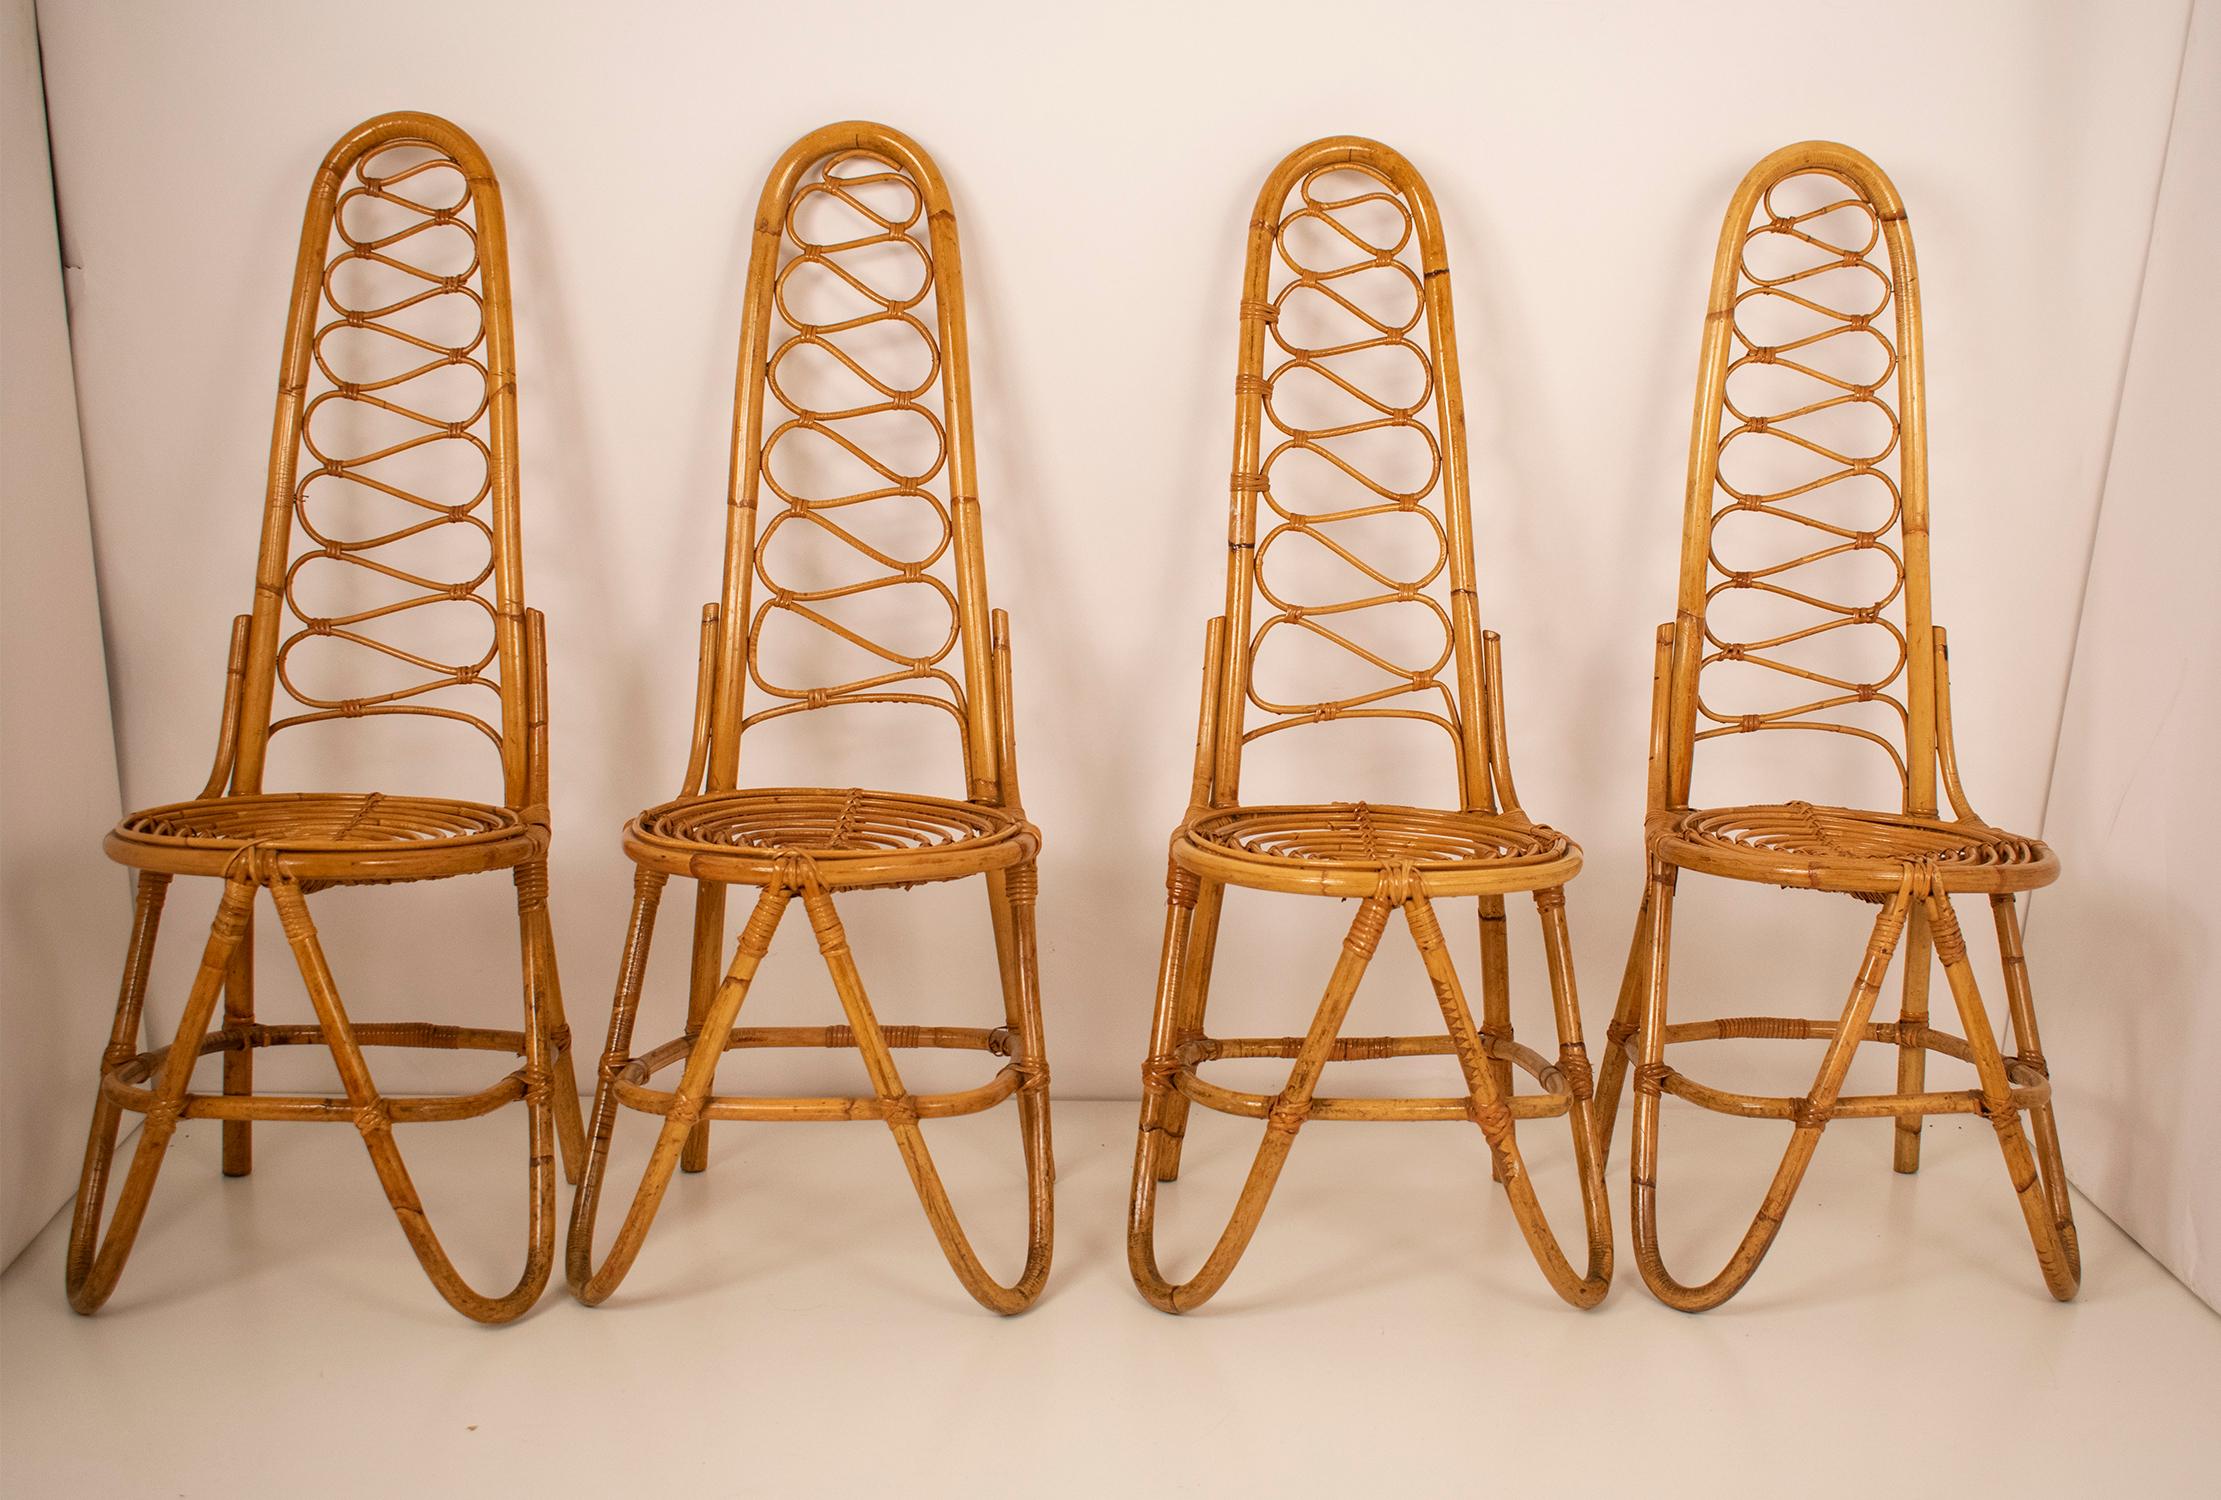 Mid-Century Modern Bamboo Chairs by Dirk Van Sliedrecht for Rohe Noordwolde, 1950